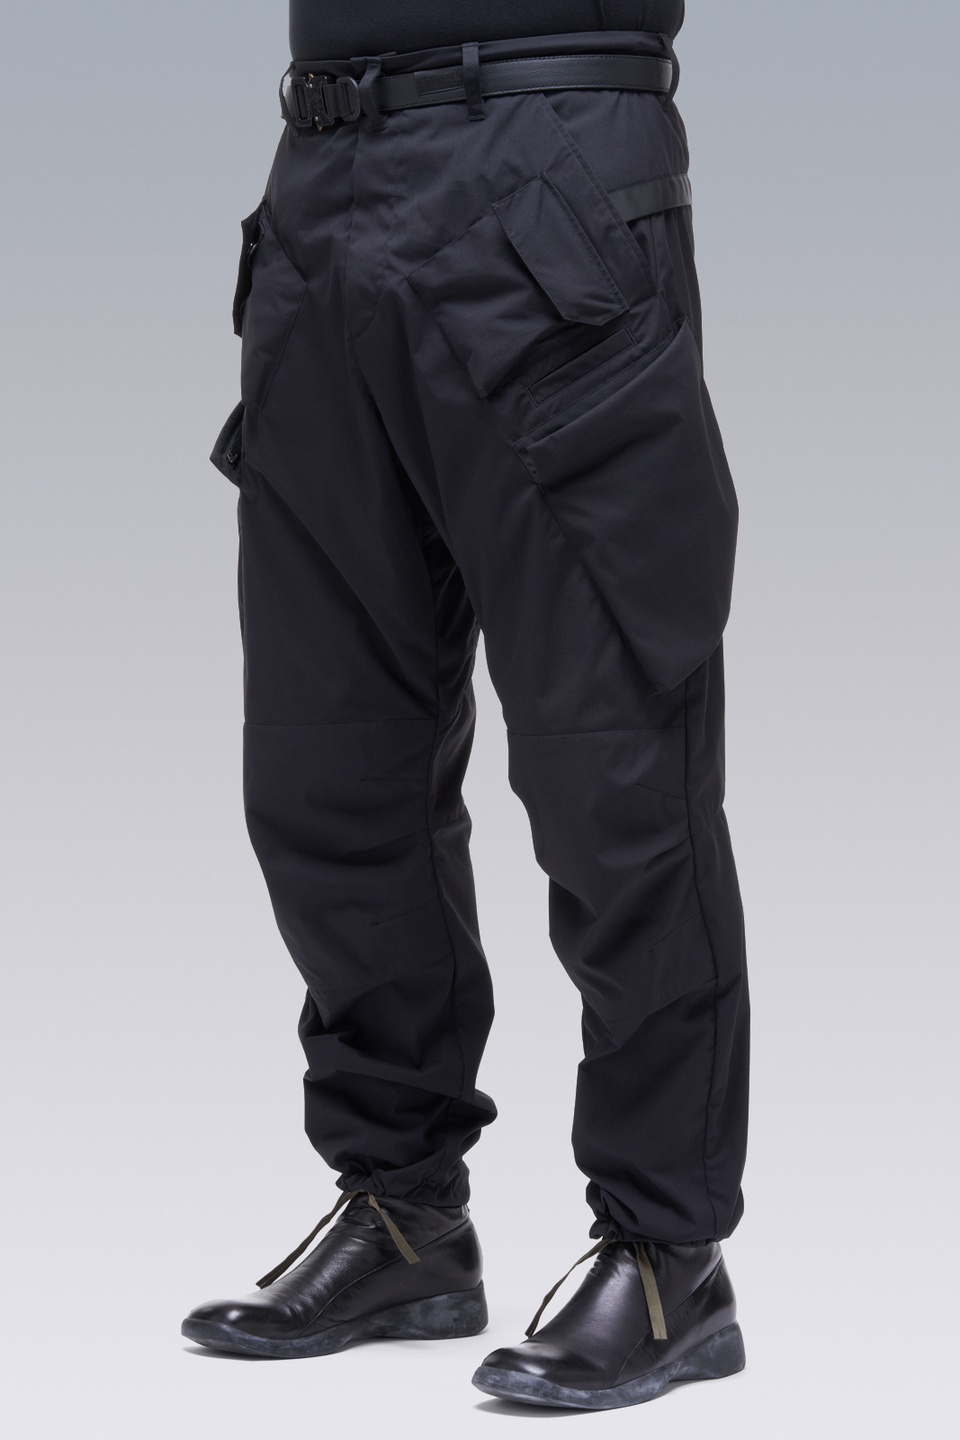 P24A-E Encapsulated Nylon Articulated BDU Trouser Black - 22